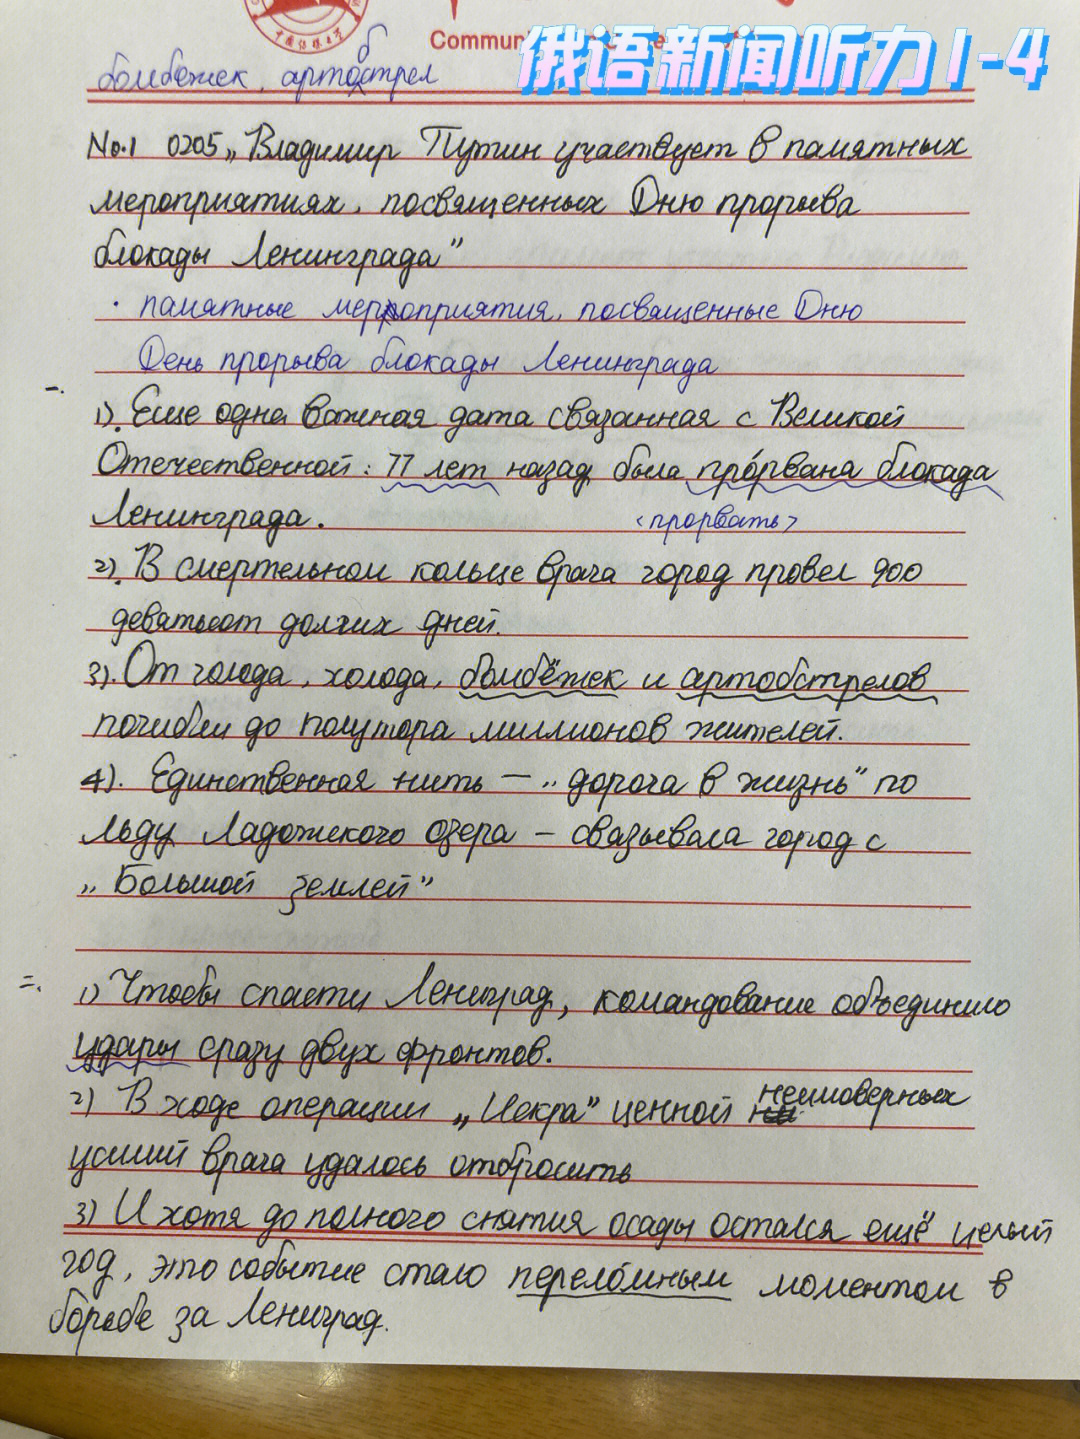 俄语书信格式图片图片